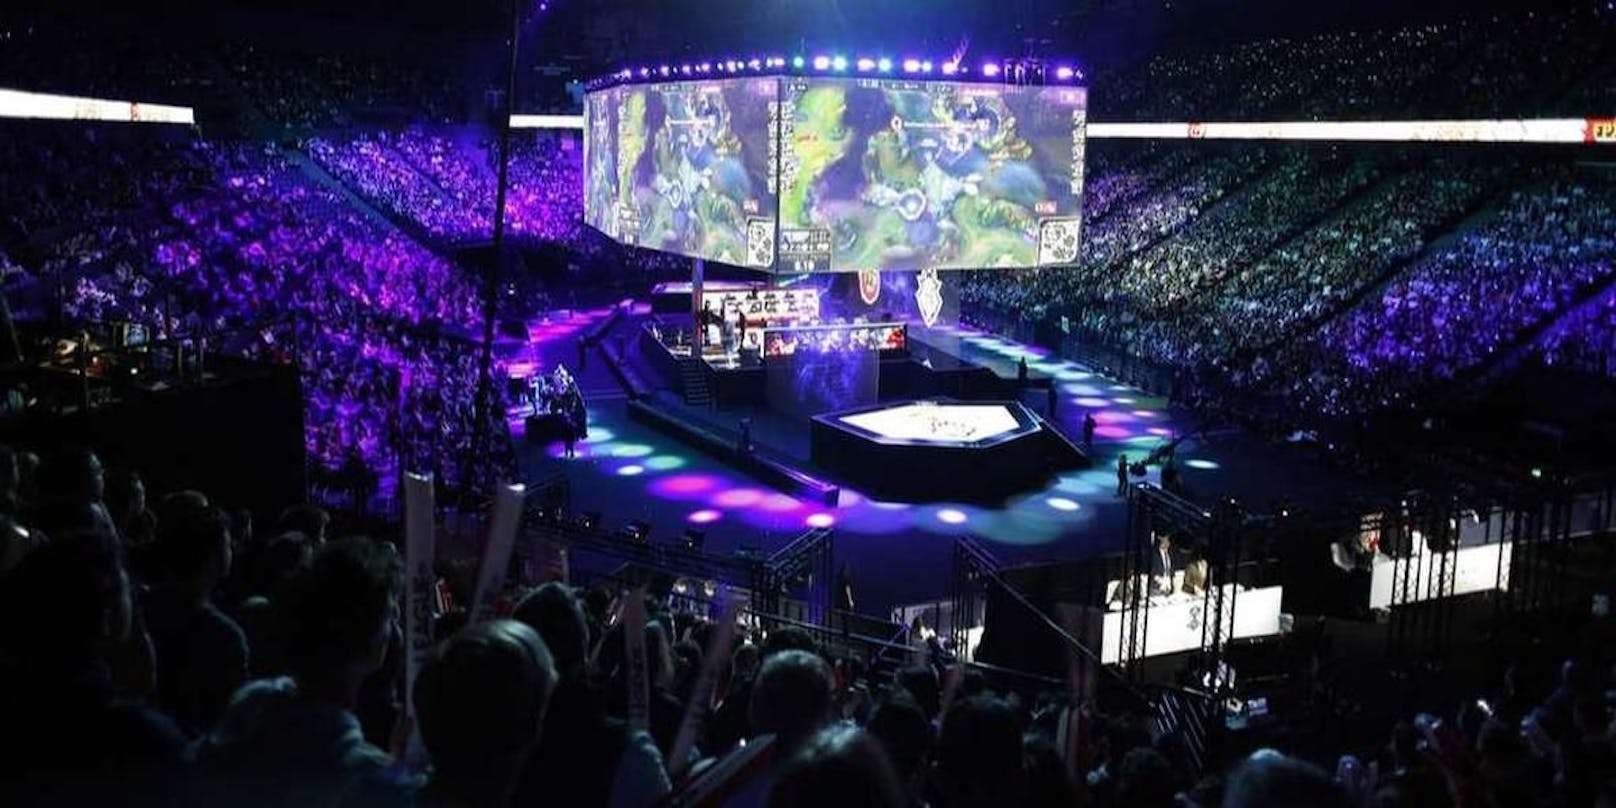 Zum Strategiespiel "League of Legends" werden die größten E-Sport-Turniere abgehalten.